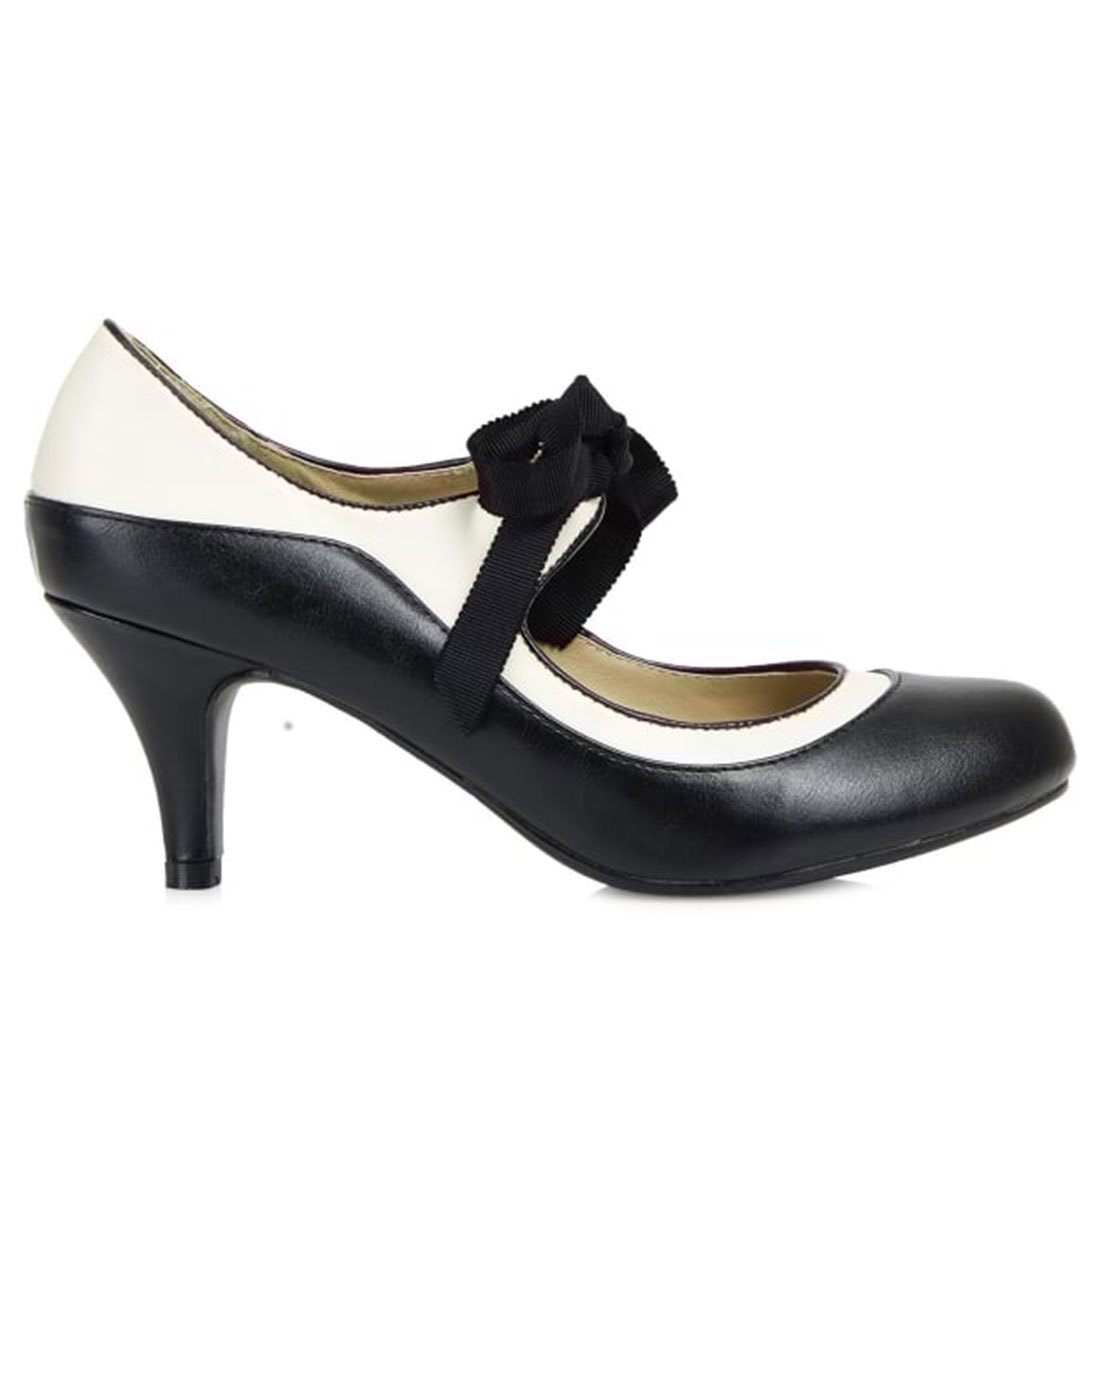 50s style heels